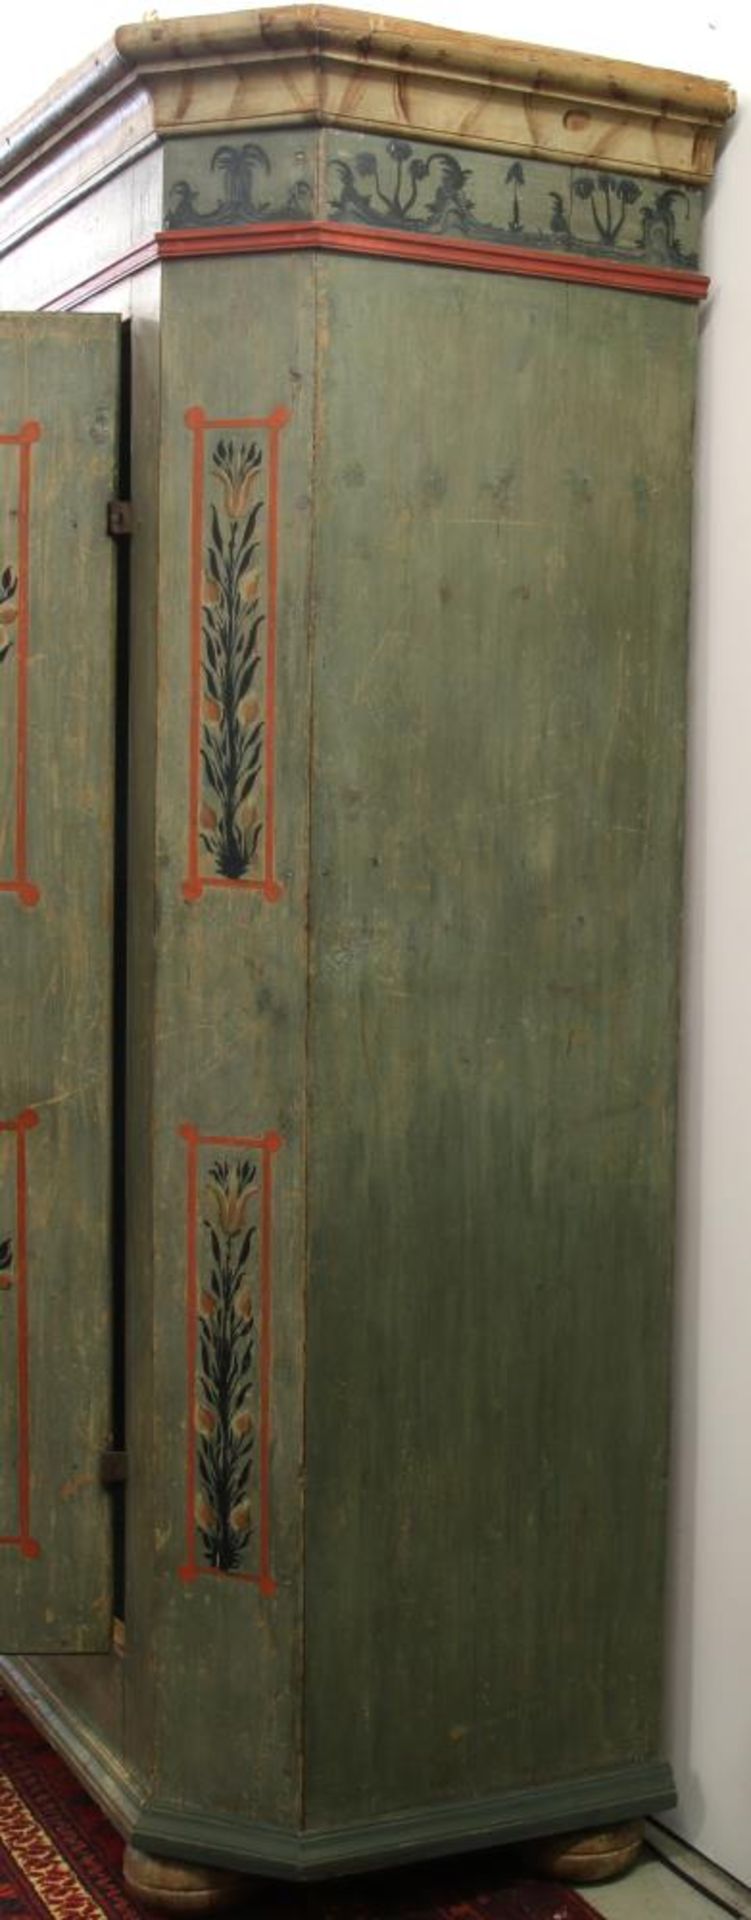 Bauernschrank mit floralem Dekor Bodenseeraum, 18. Jahrhundert. Nadelholz, polychrom gefasst. - Bild 4 aus 5